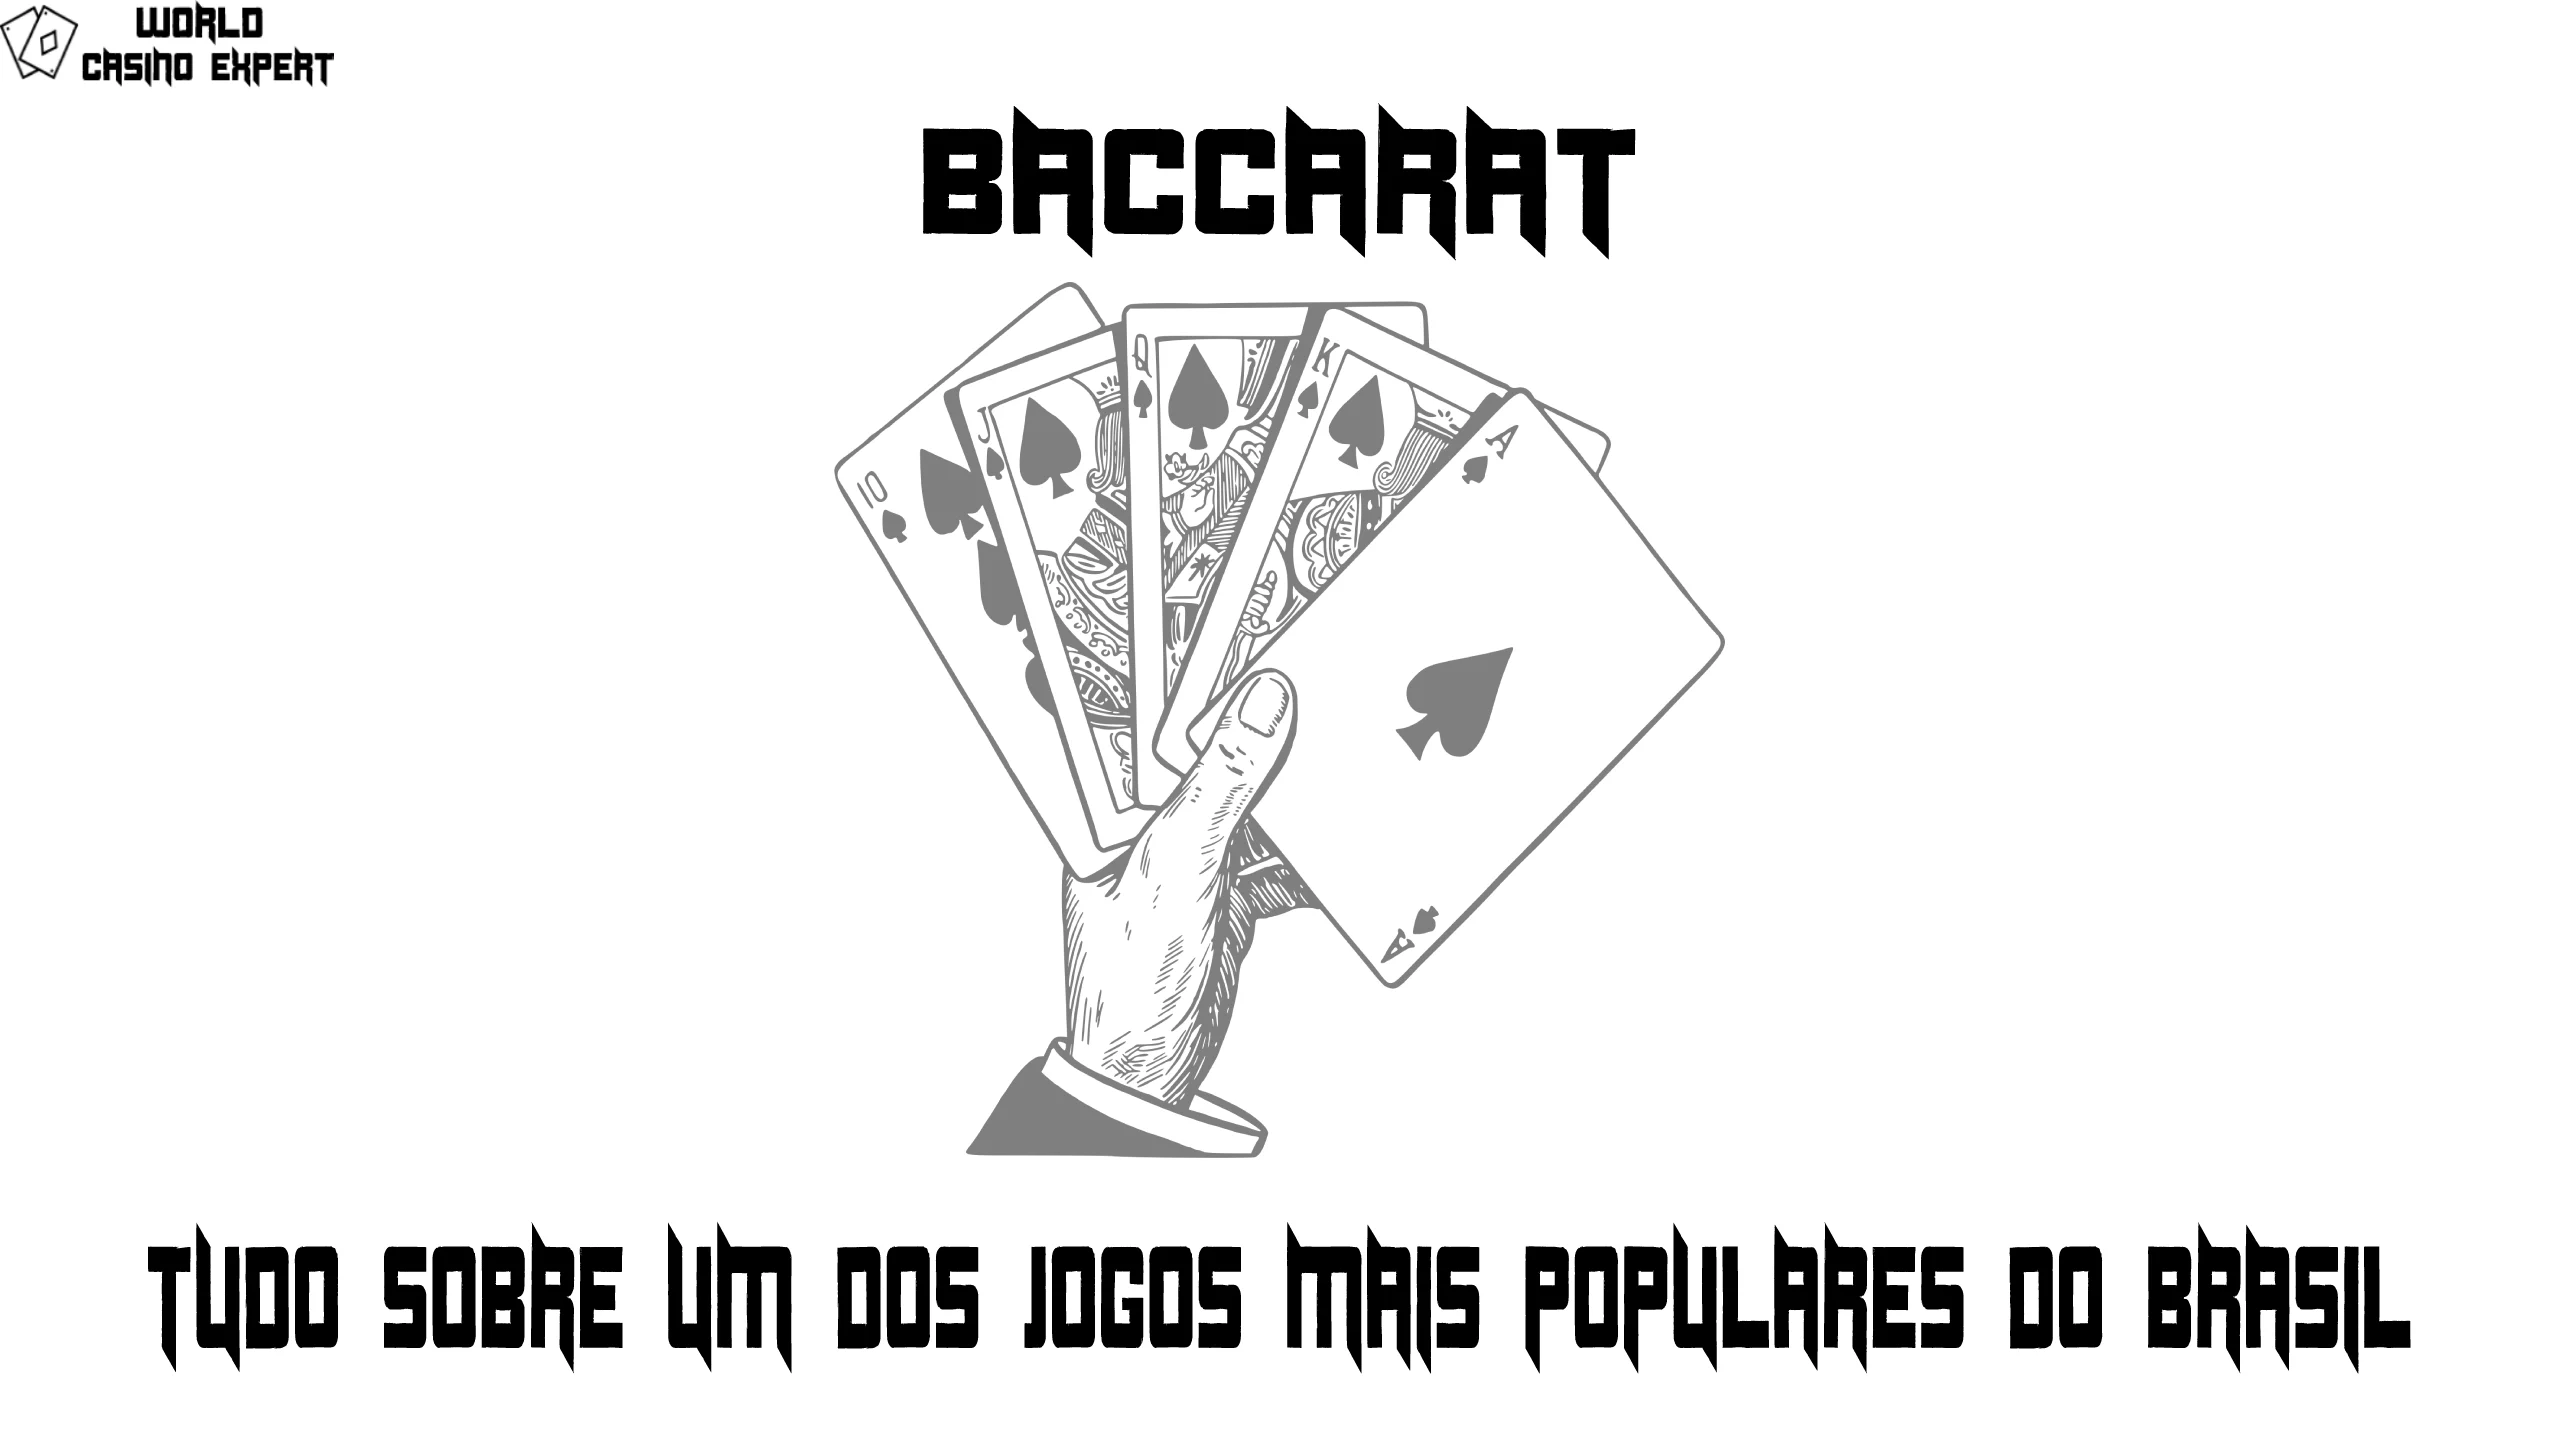 Baccarat tudo sobre um dos jogos mais populares do Brasil | World Casino Expert